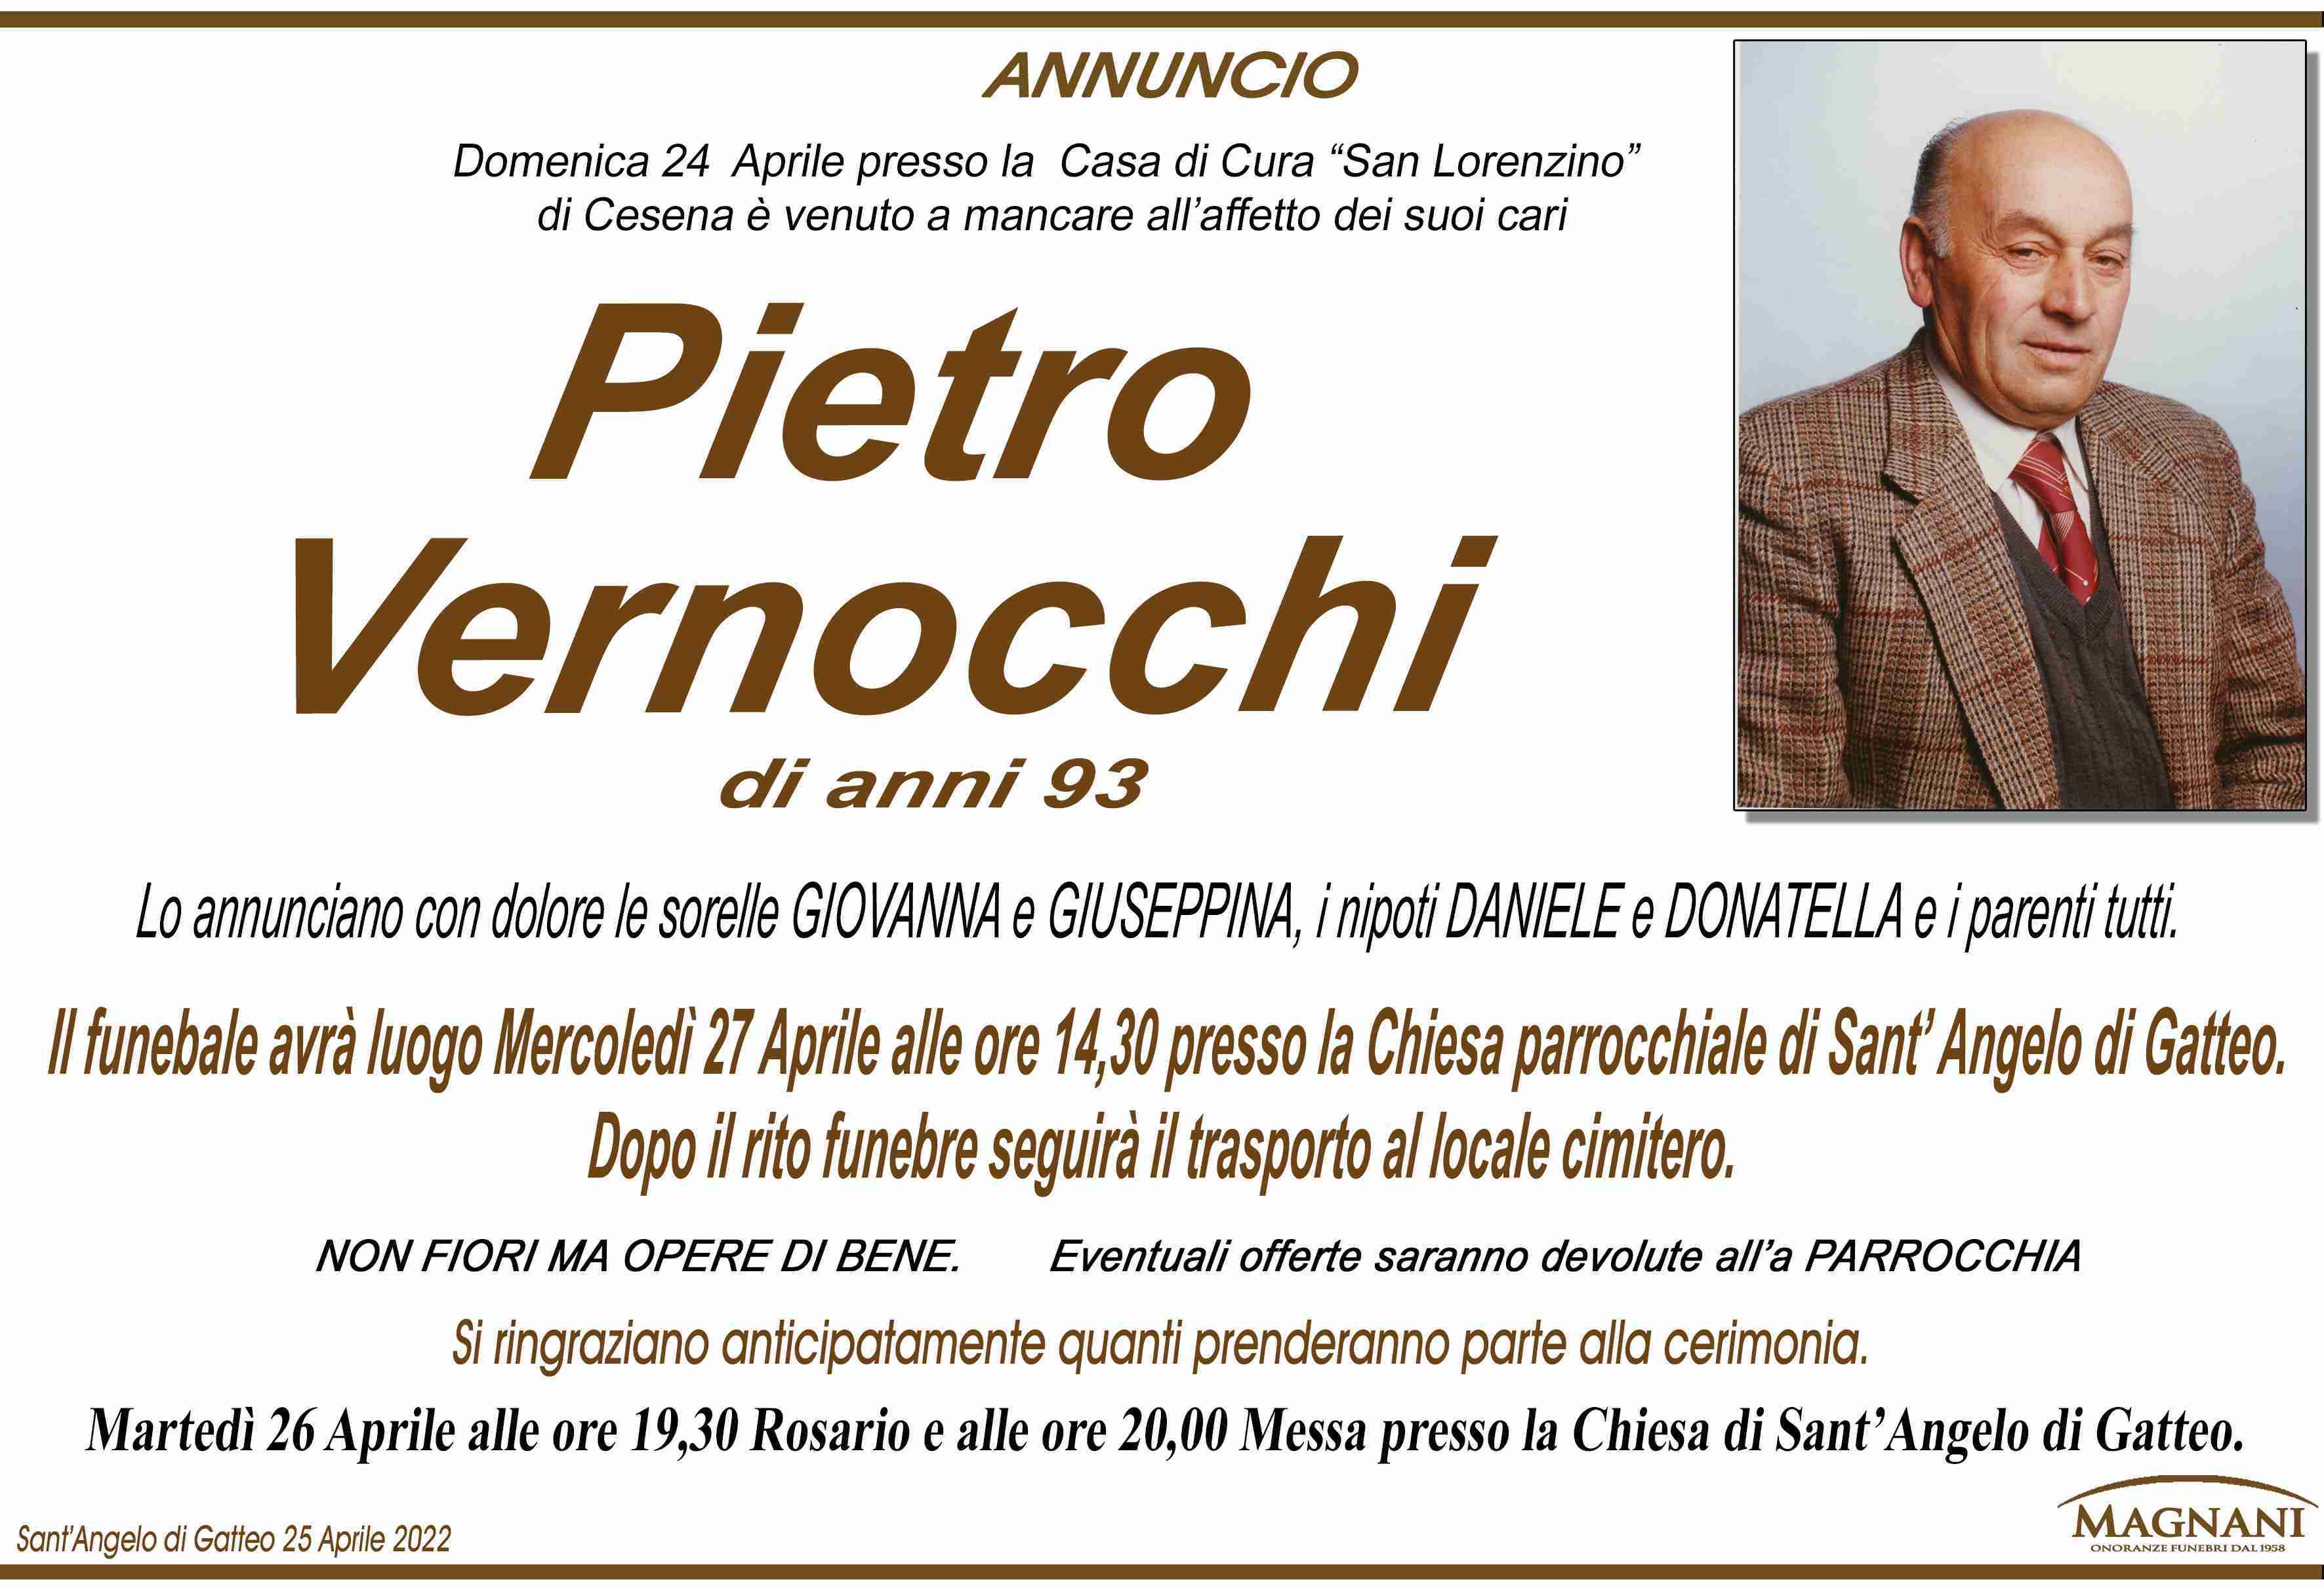 Pietro Vernocchi